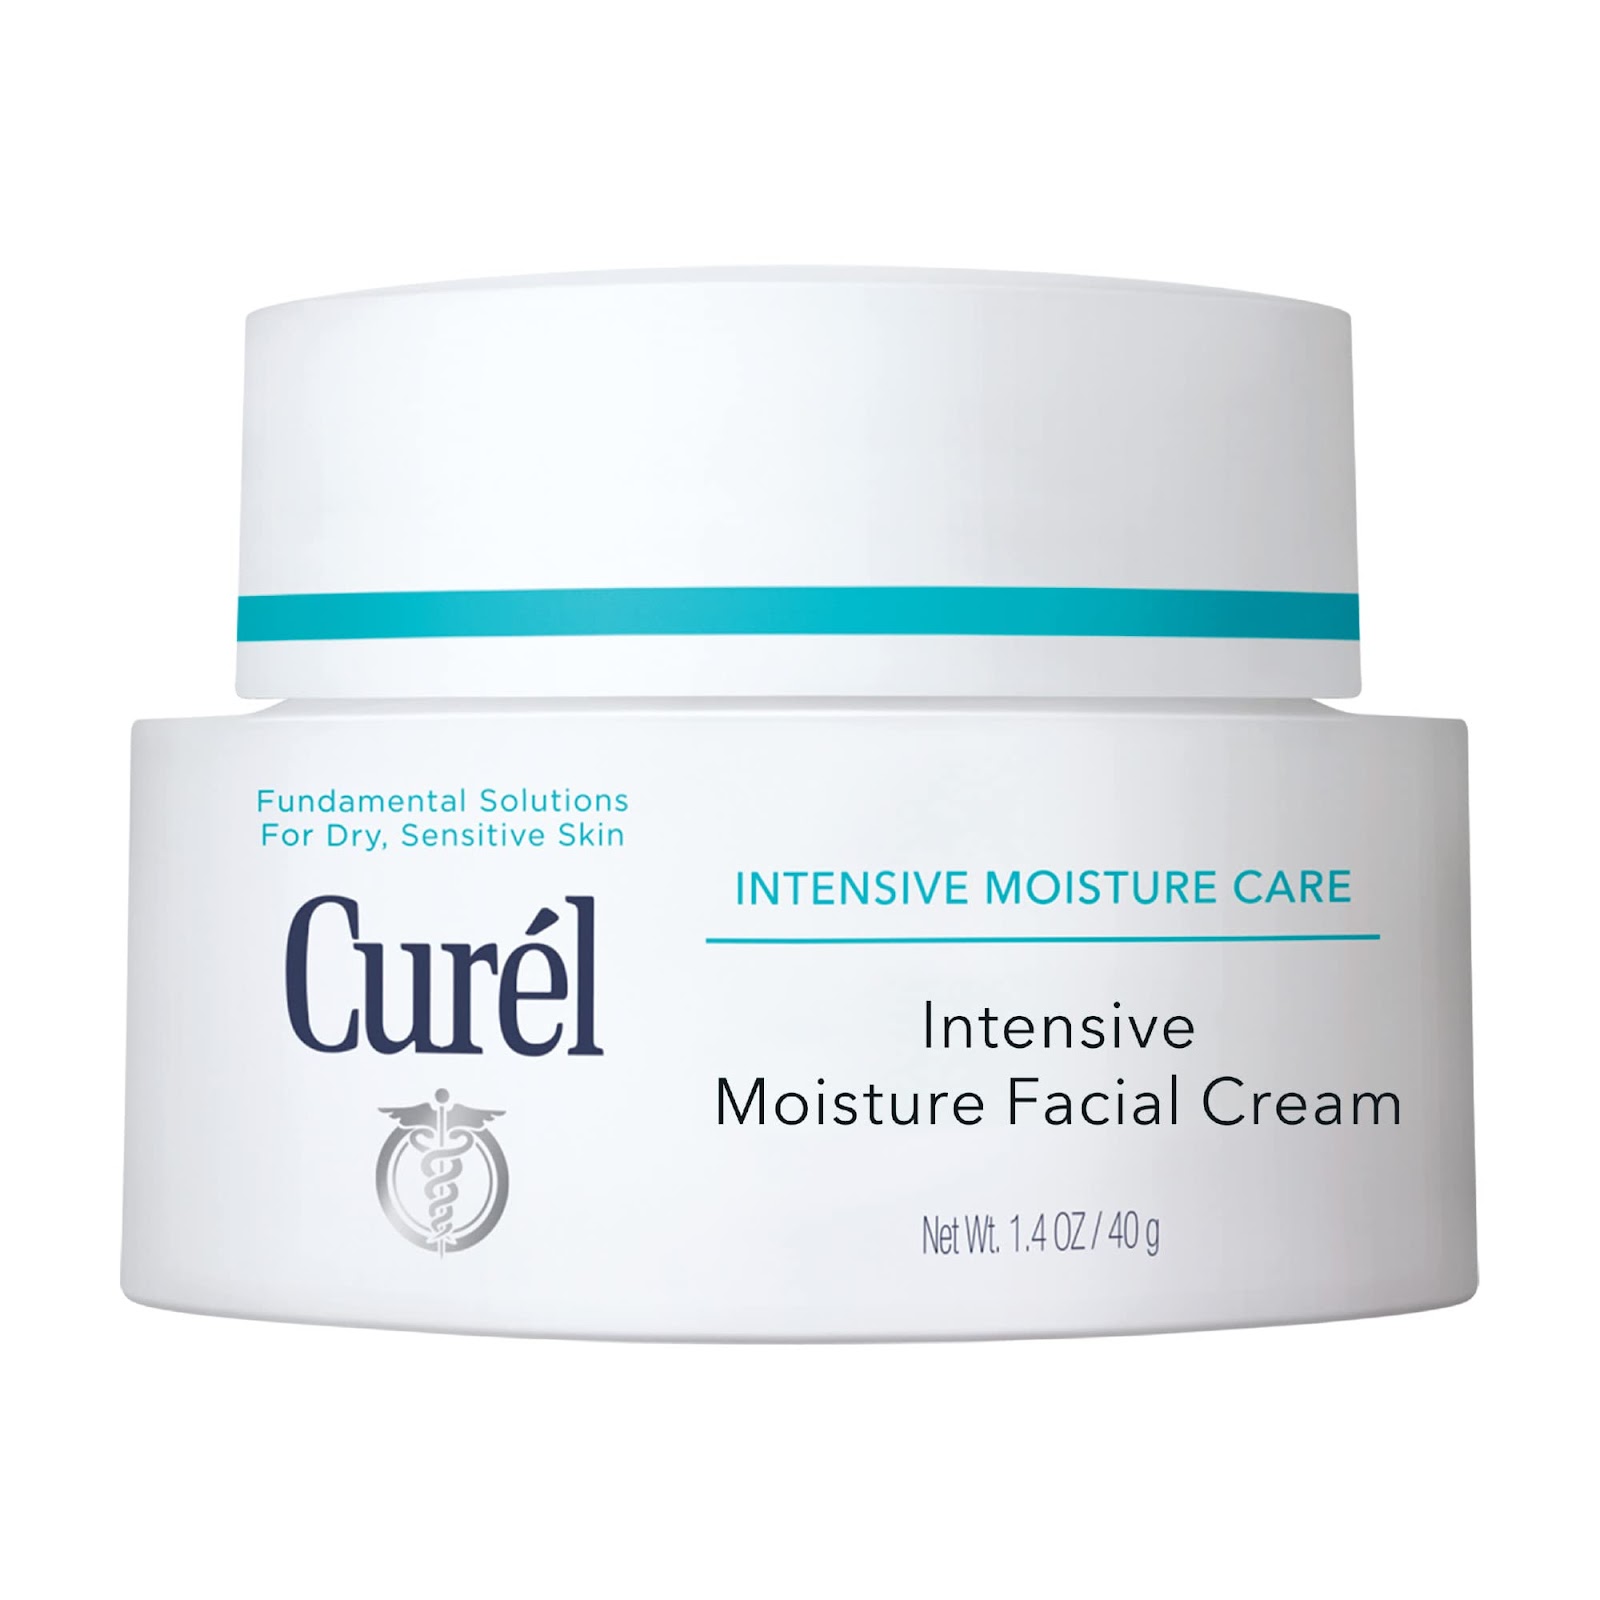 Curel Japanese Skin Care Intensive Face Moisturizer Cream